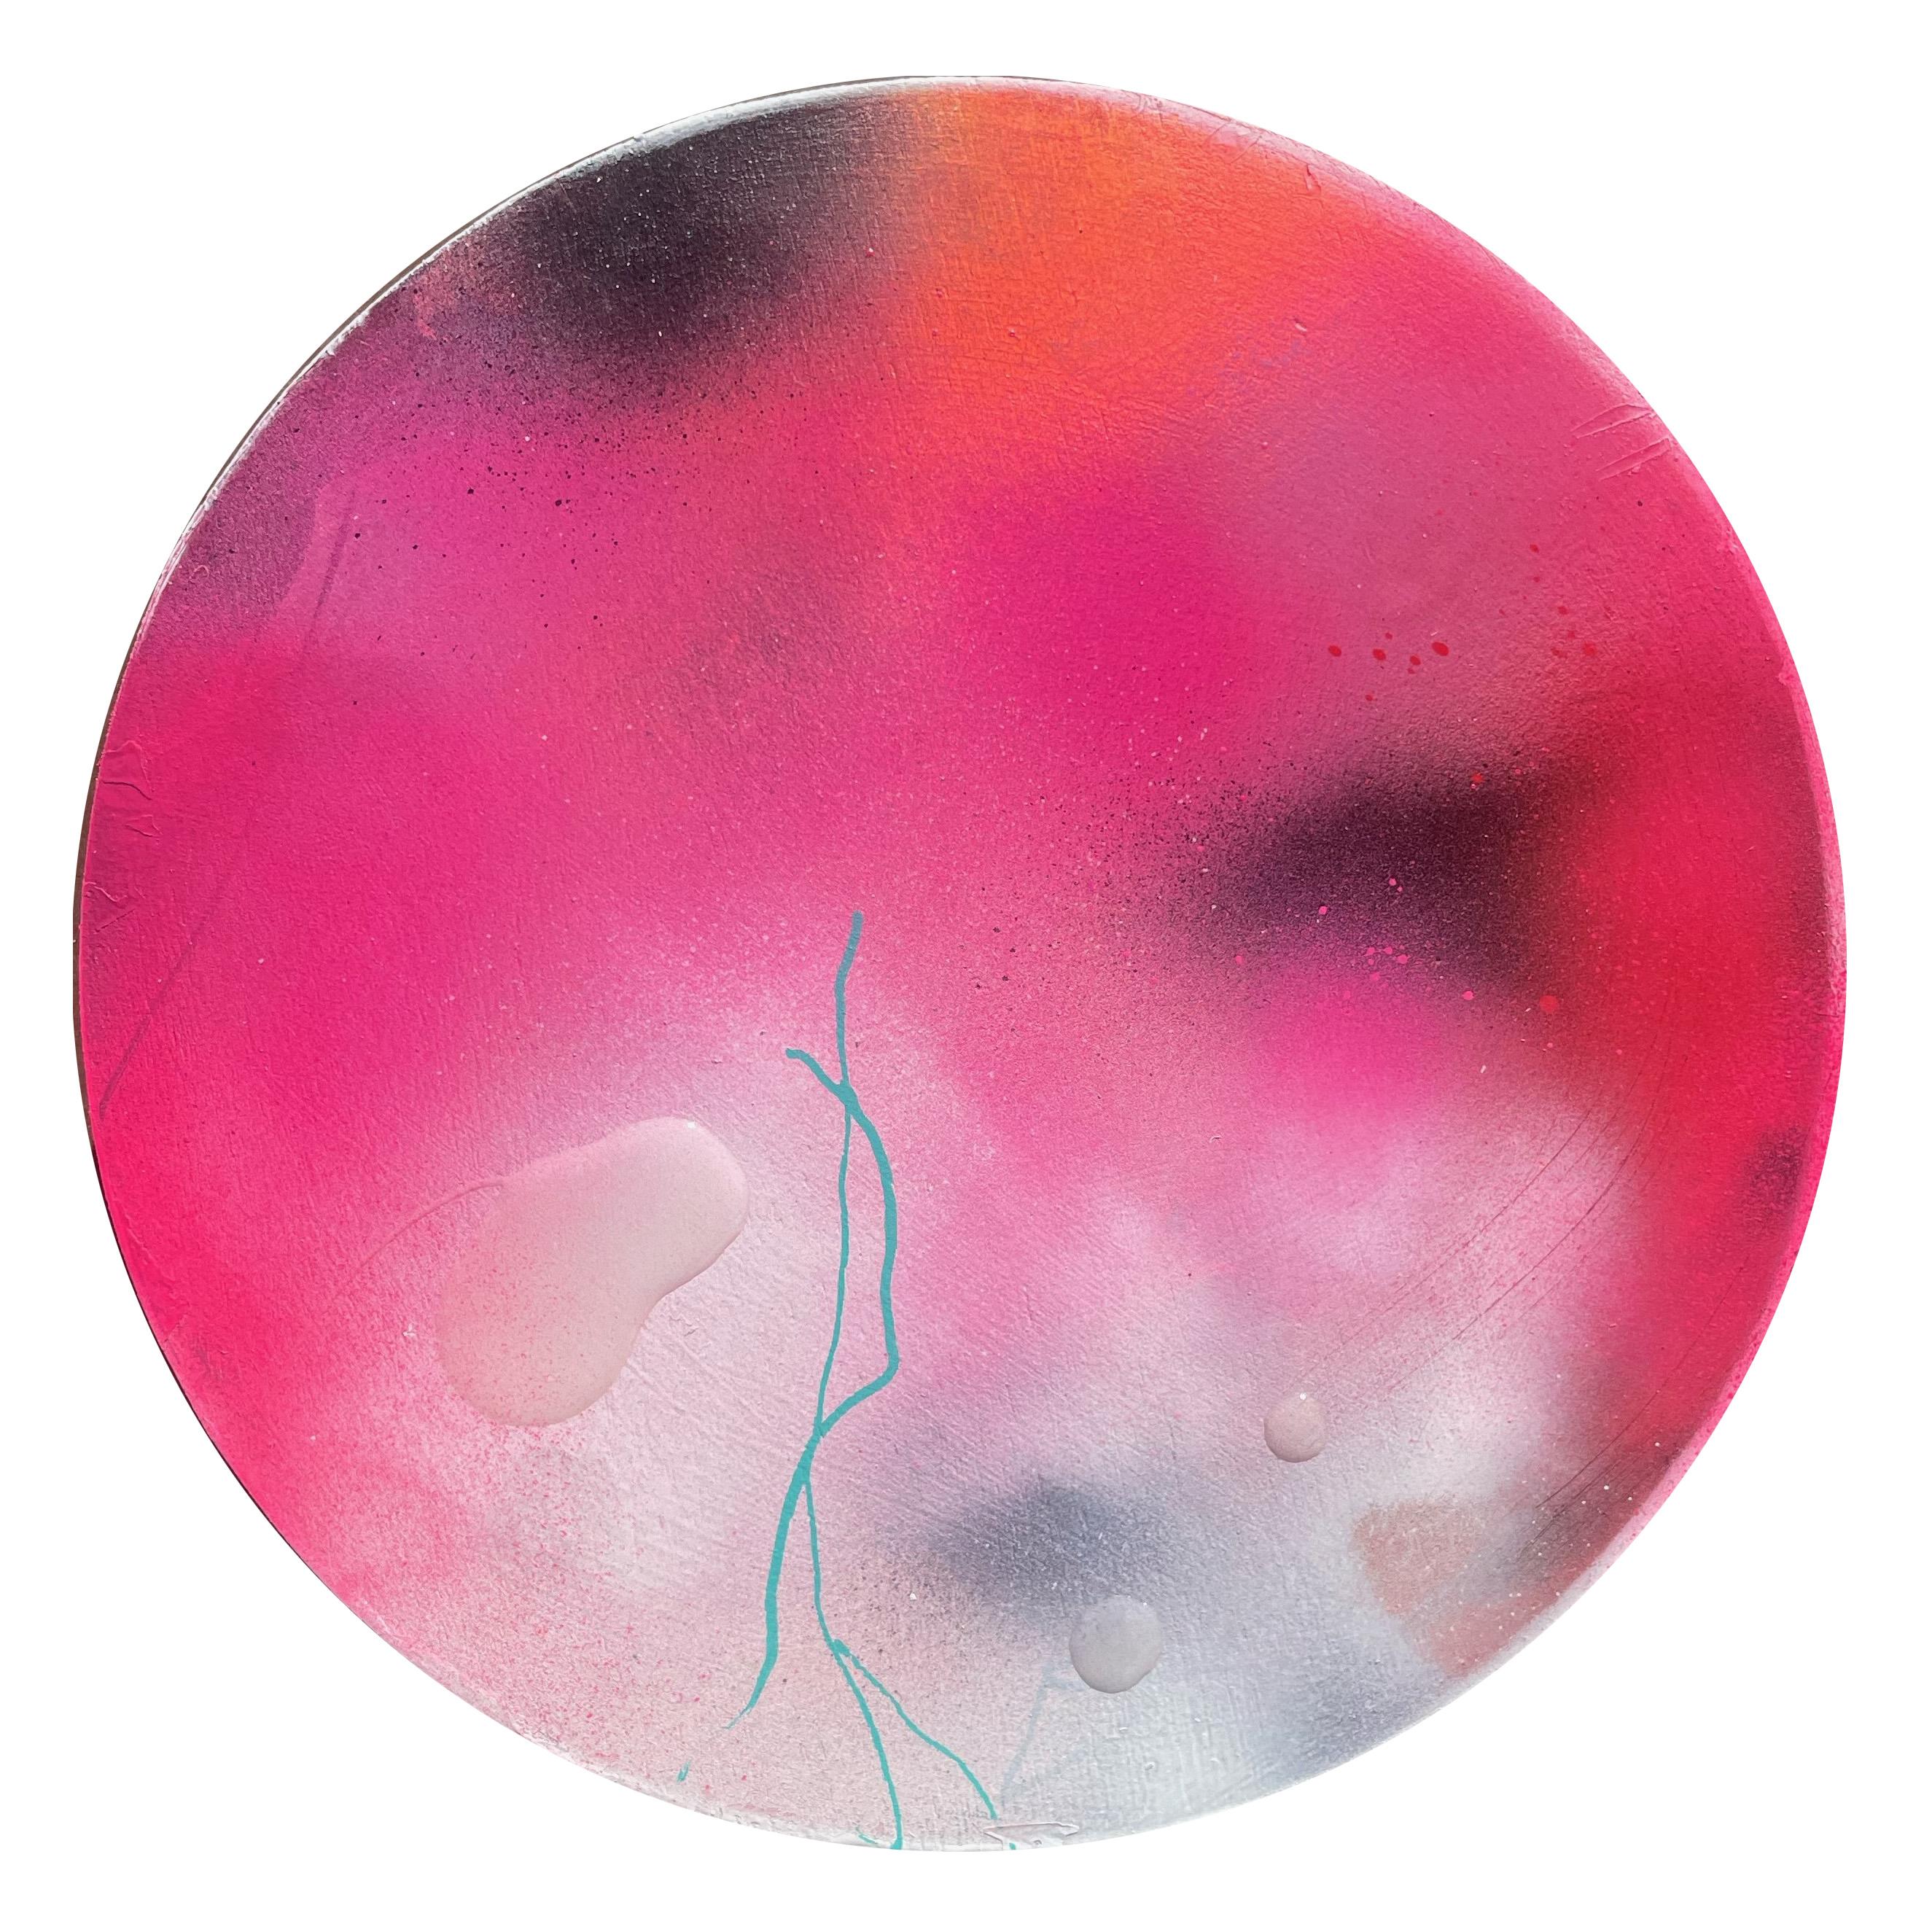 "Perlende Tautropfen 3" Zeitgenössische farbenfrohe abstrakte kreisförmige Malerei